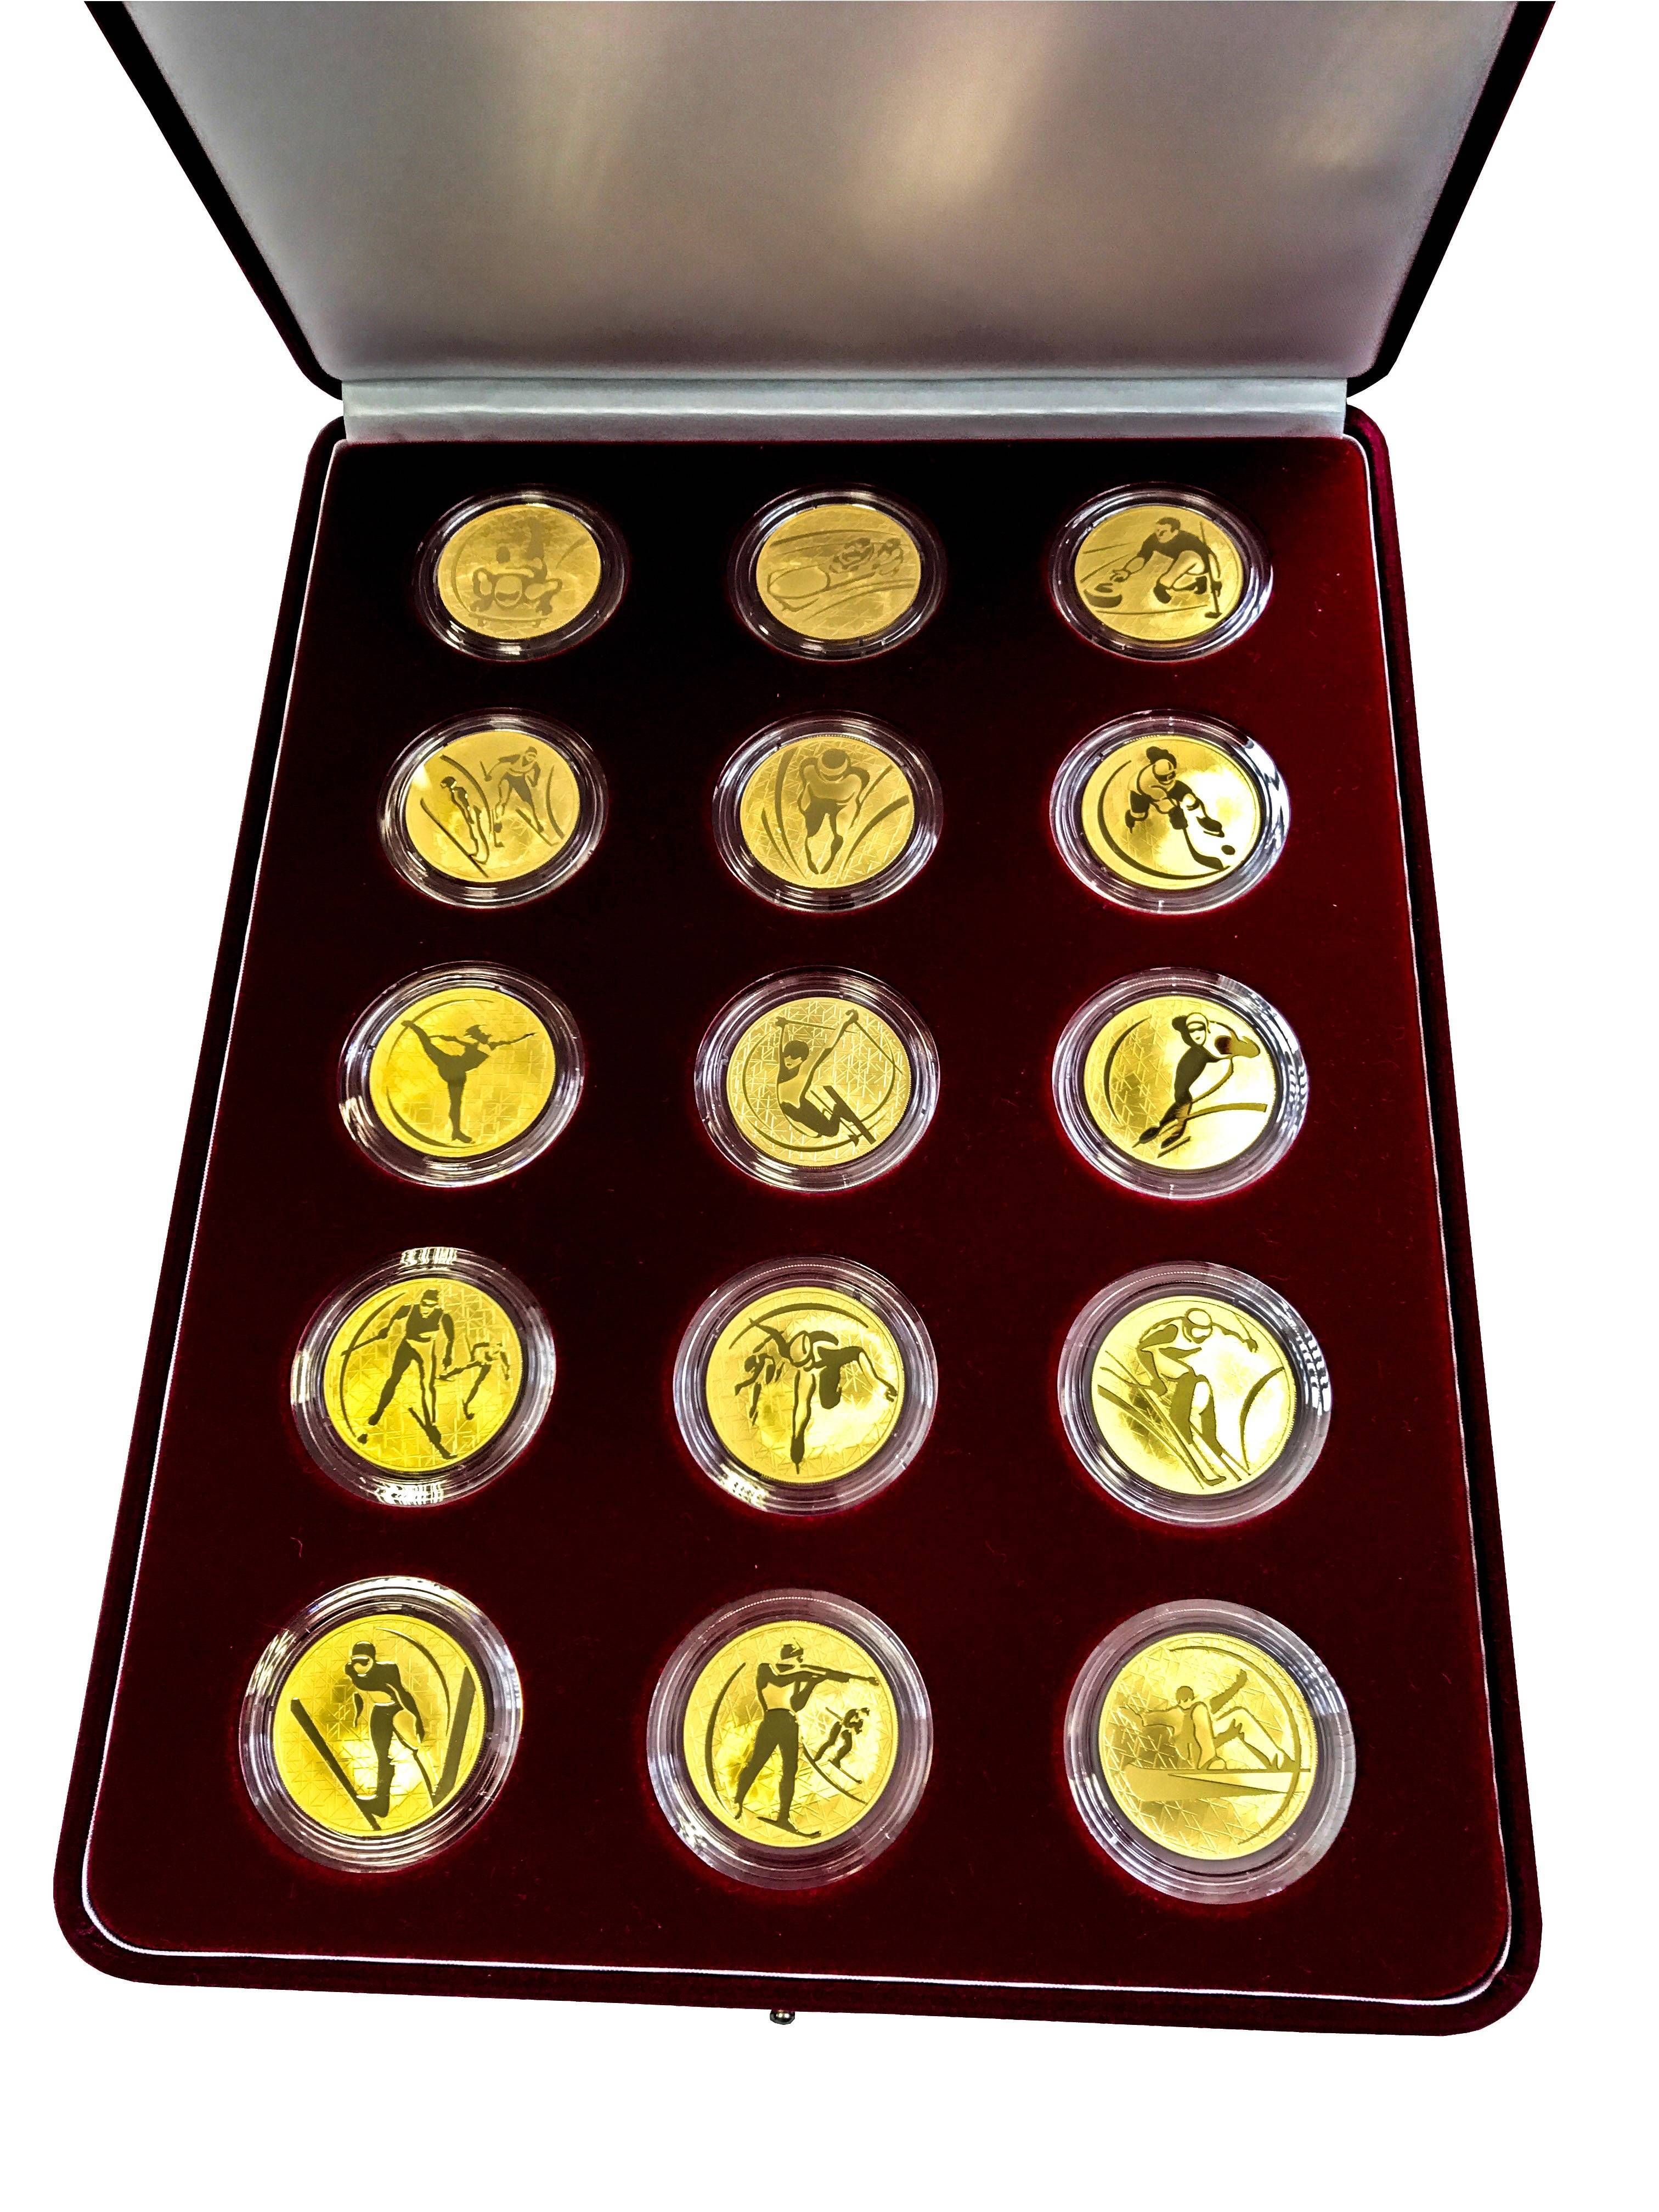 По какой цене сбербанк покупает золотые монеты. Золотые инвестиционные монеты Касатонов. Золотая монета 31.1 грамм. Наборы монет. Коллекционные наборы монет.